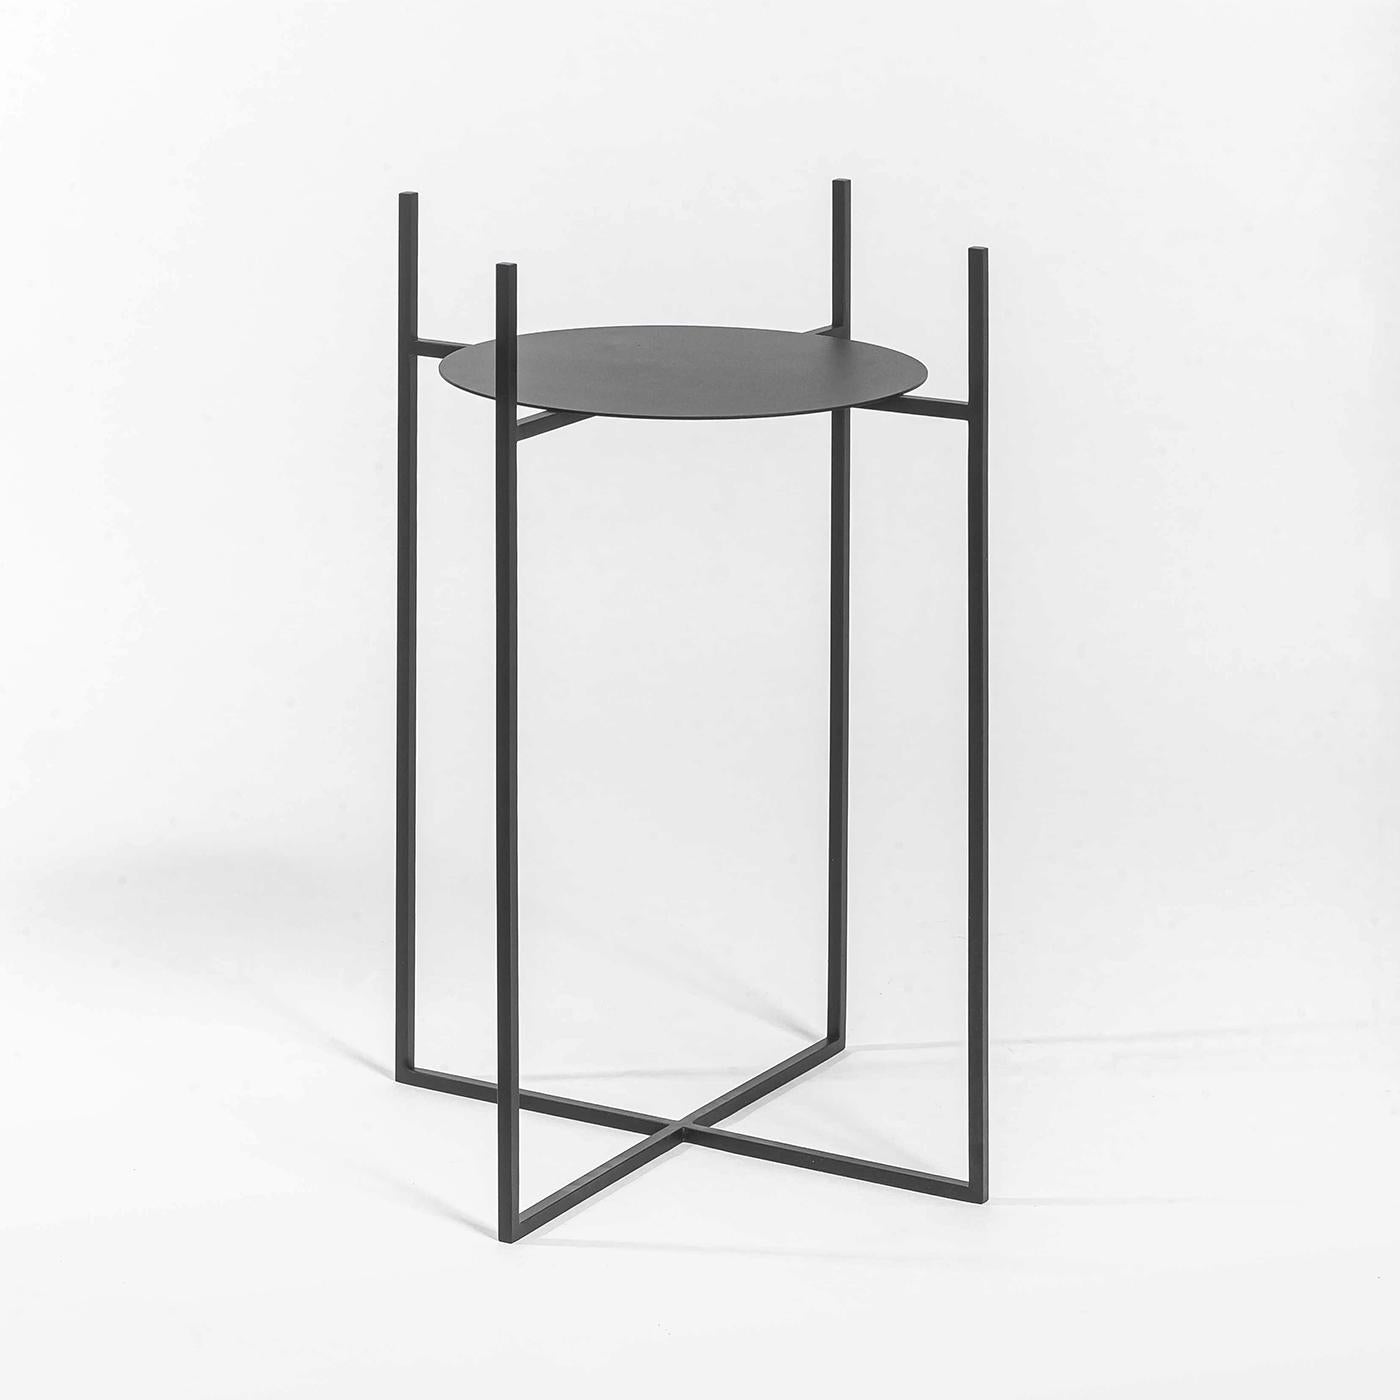 Dieser elegante, minimalistische Übertopf sitzt auf einem dünnen, schwarzen Eisenrahmen. Er zeichnet sich durch ein raffiniertes Äußeres aus handgeflochtenem, champagnergoldfarbenem Aluminium mit einer inneren Stahlstruktur aus. Dieser mittelgroße